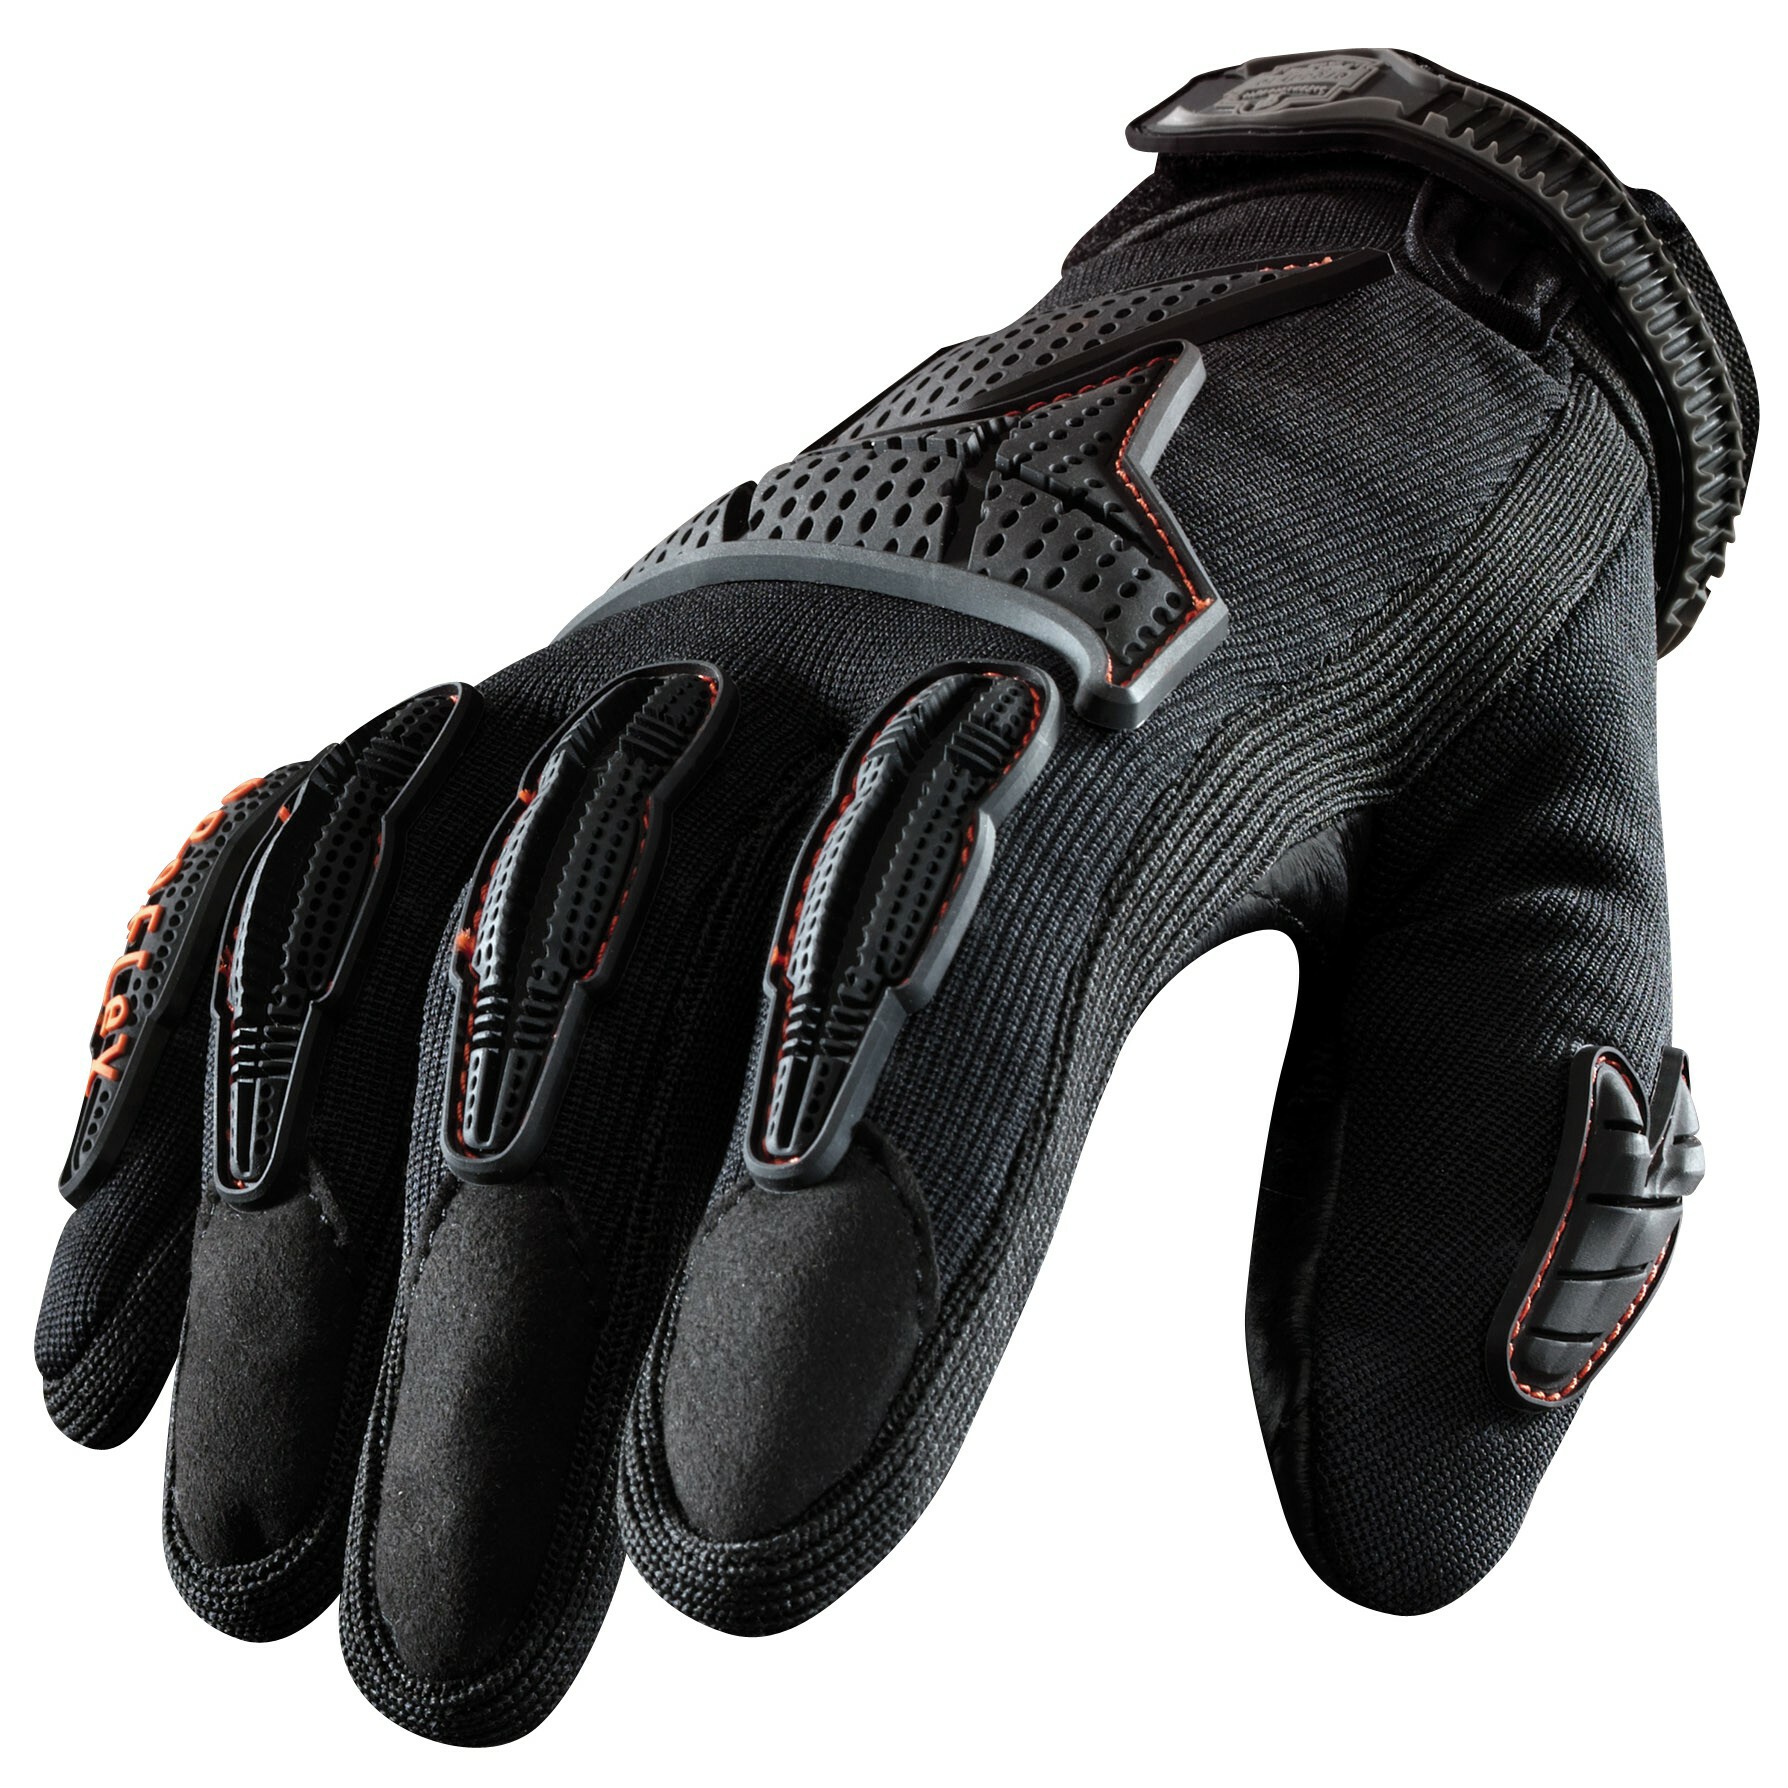 Proflex 9015 Anti-Vibration Gloves Size Medium LS075-1 